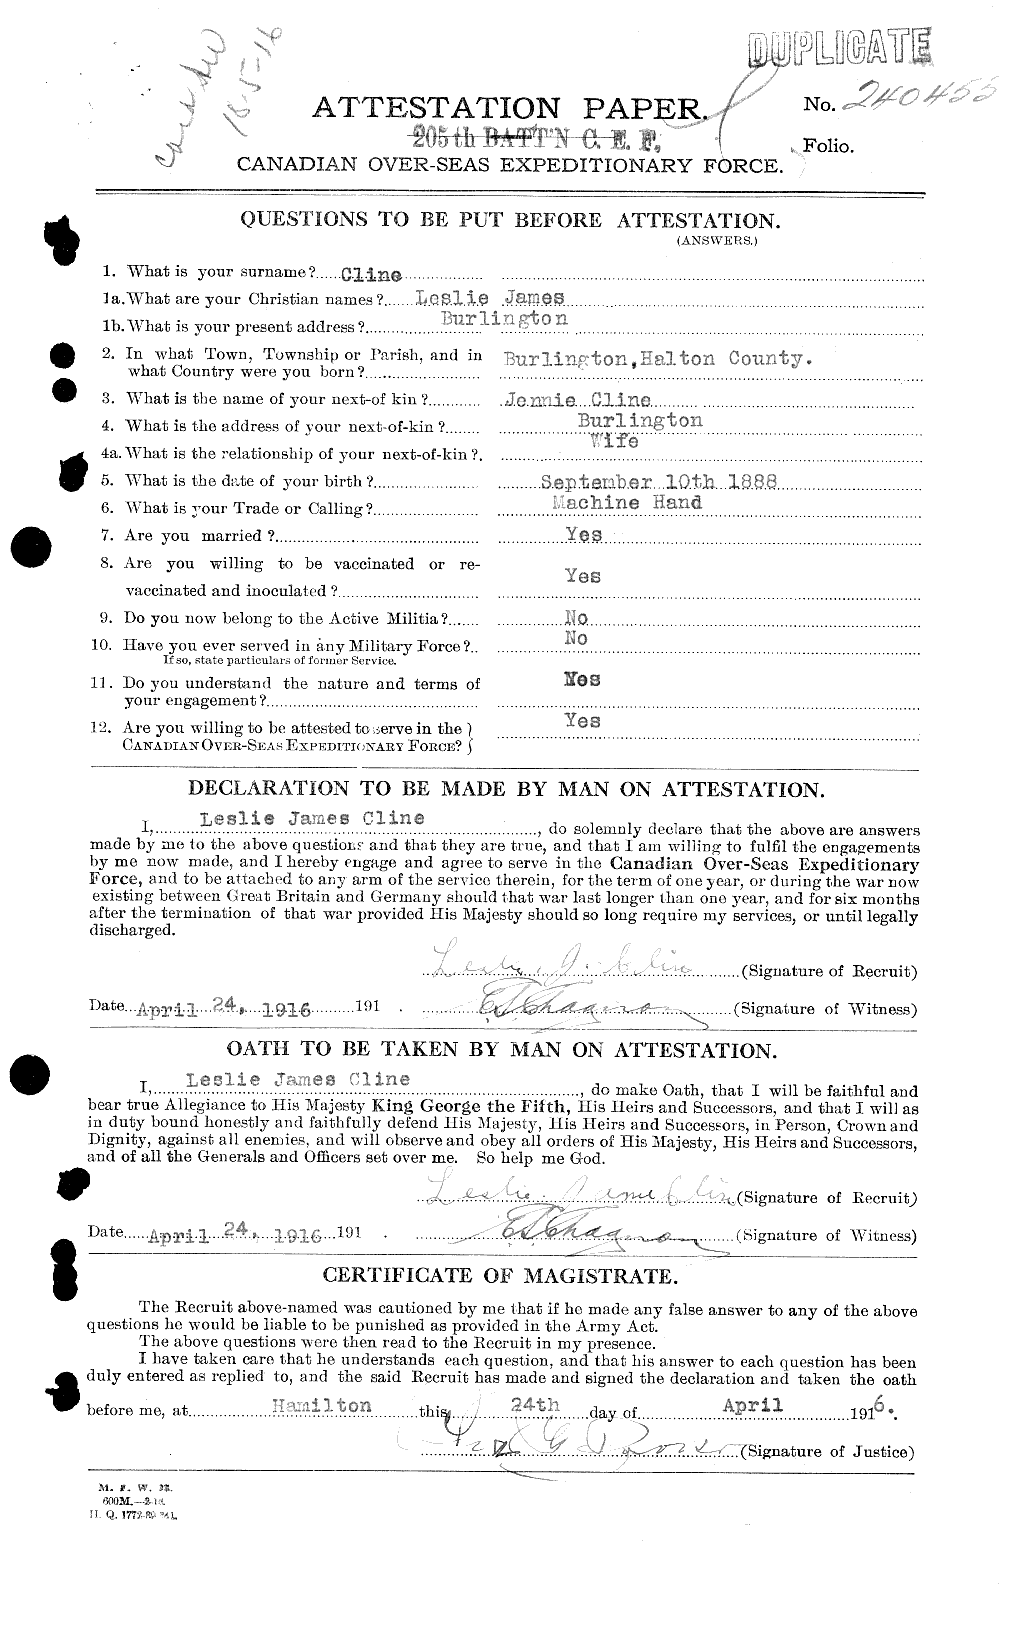 Dossiers du Personnel de la Première Guerre mondiale - CEC 029100a